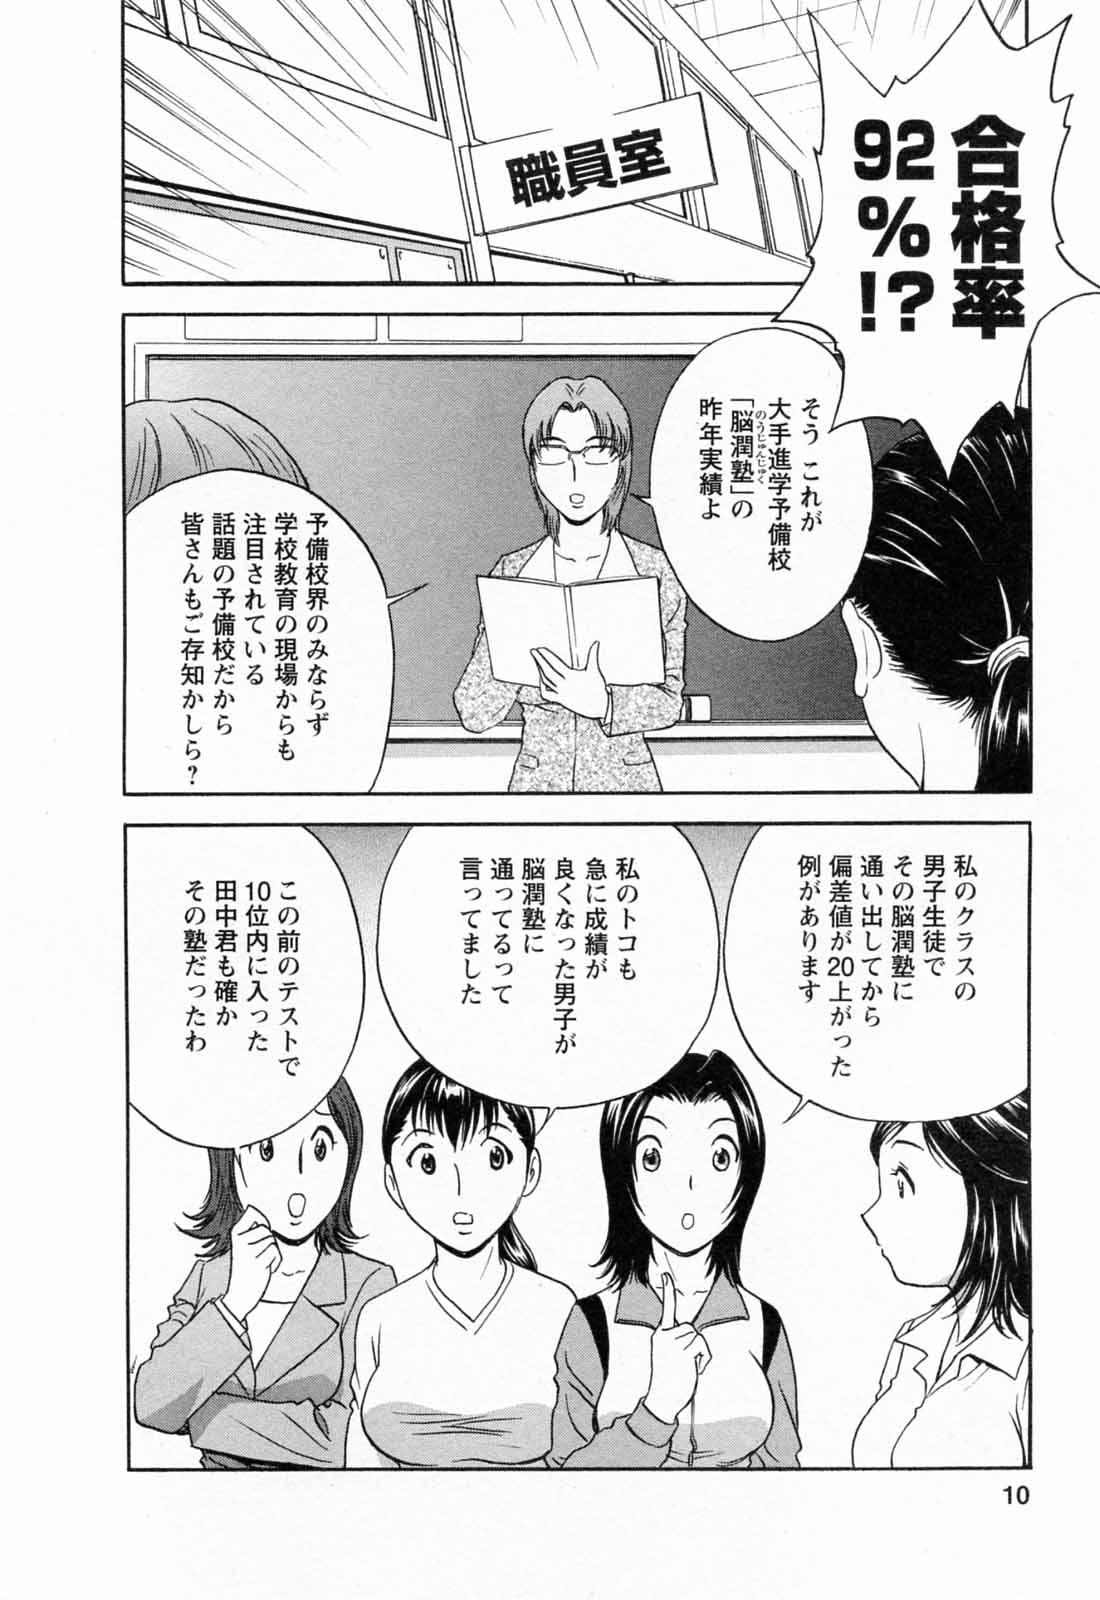 [Hidemaru] Mo-Retsu! Boin Sensei (Boing Boing Teacher) Vol.5 11